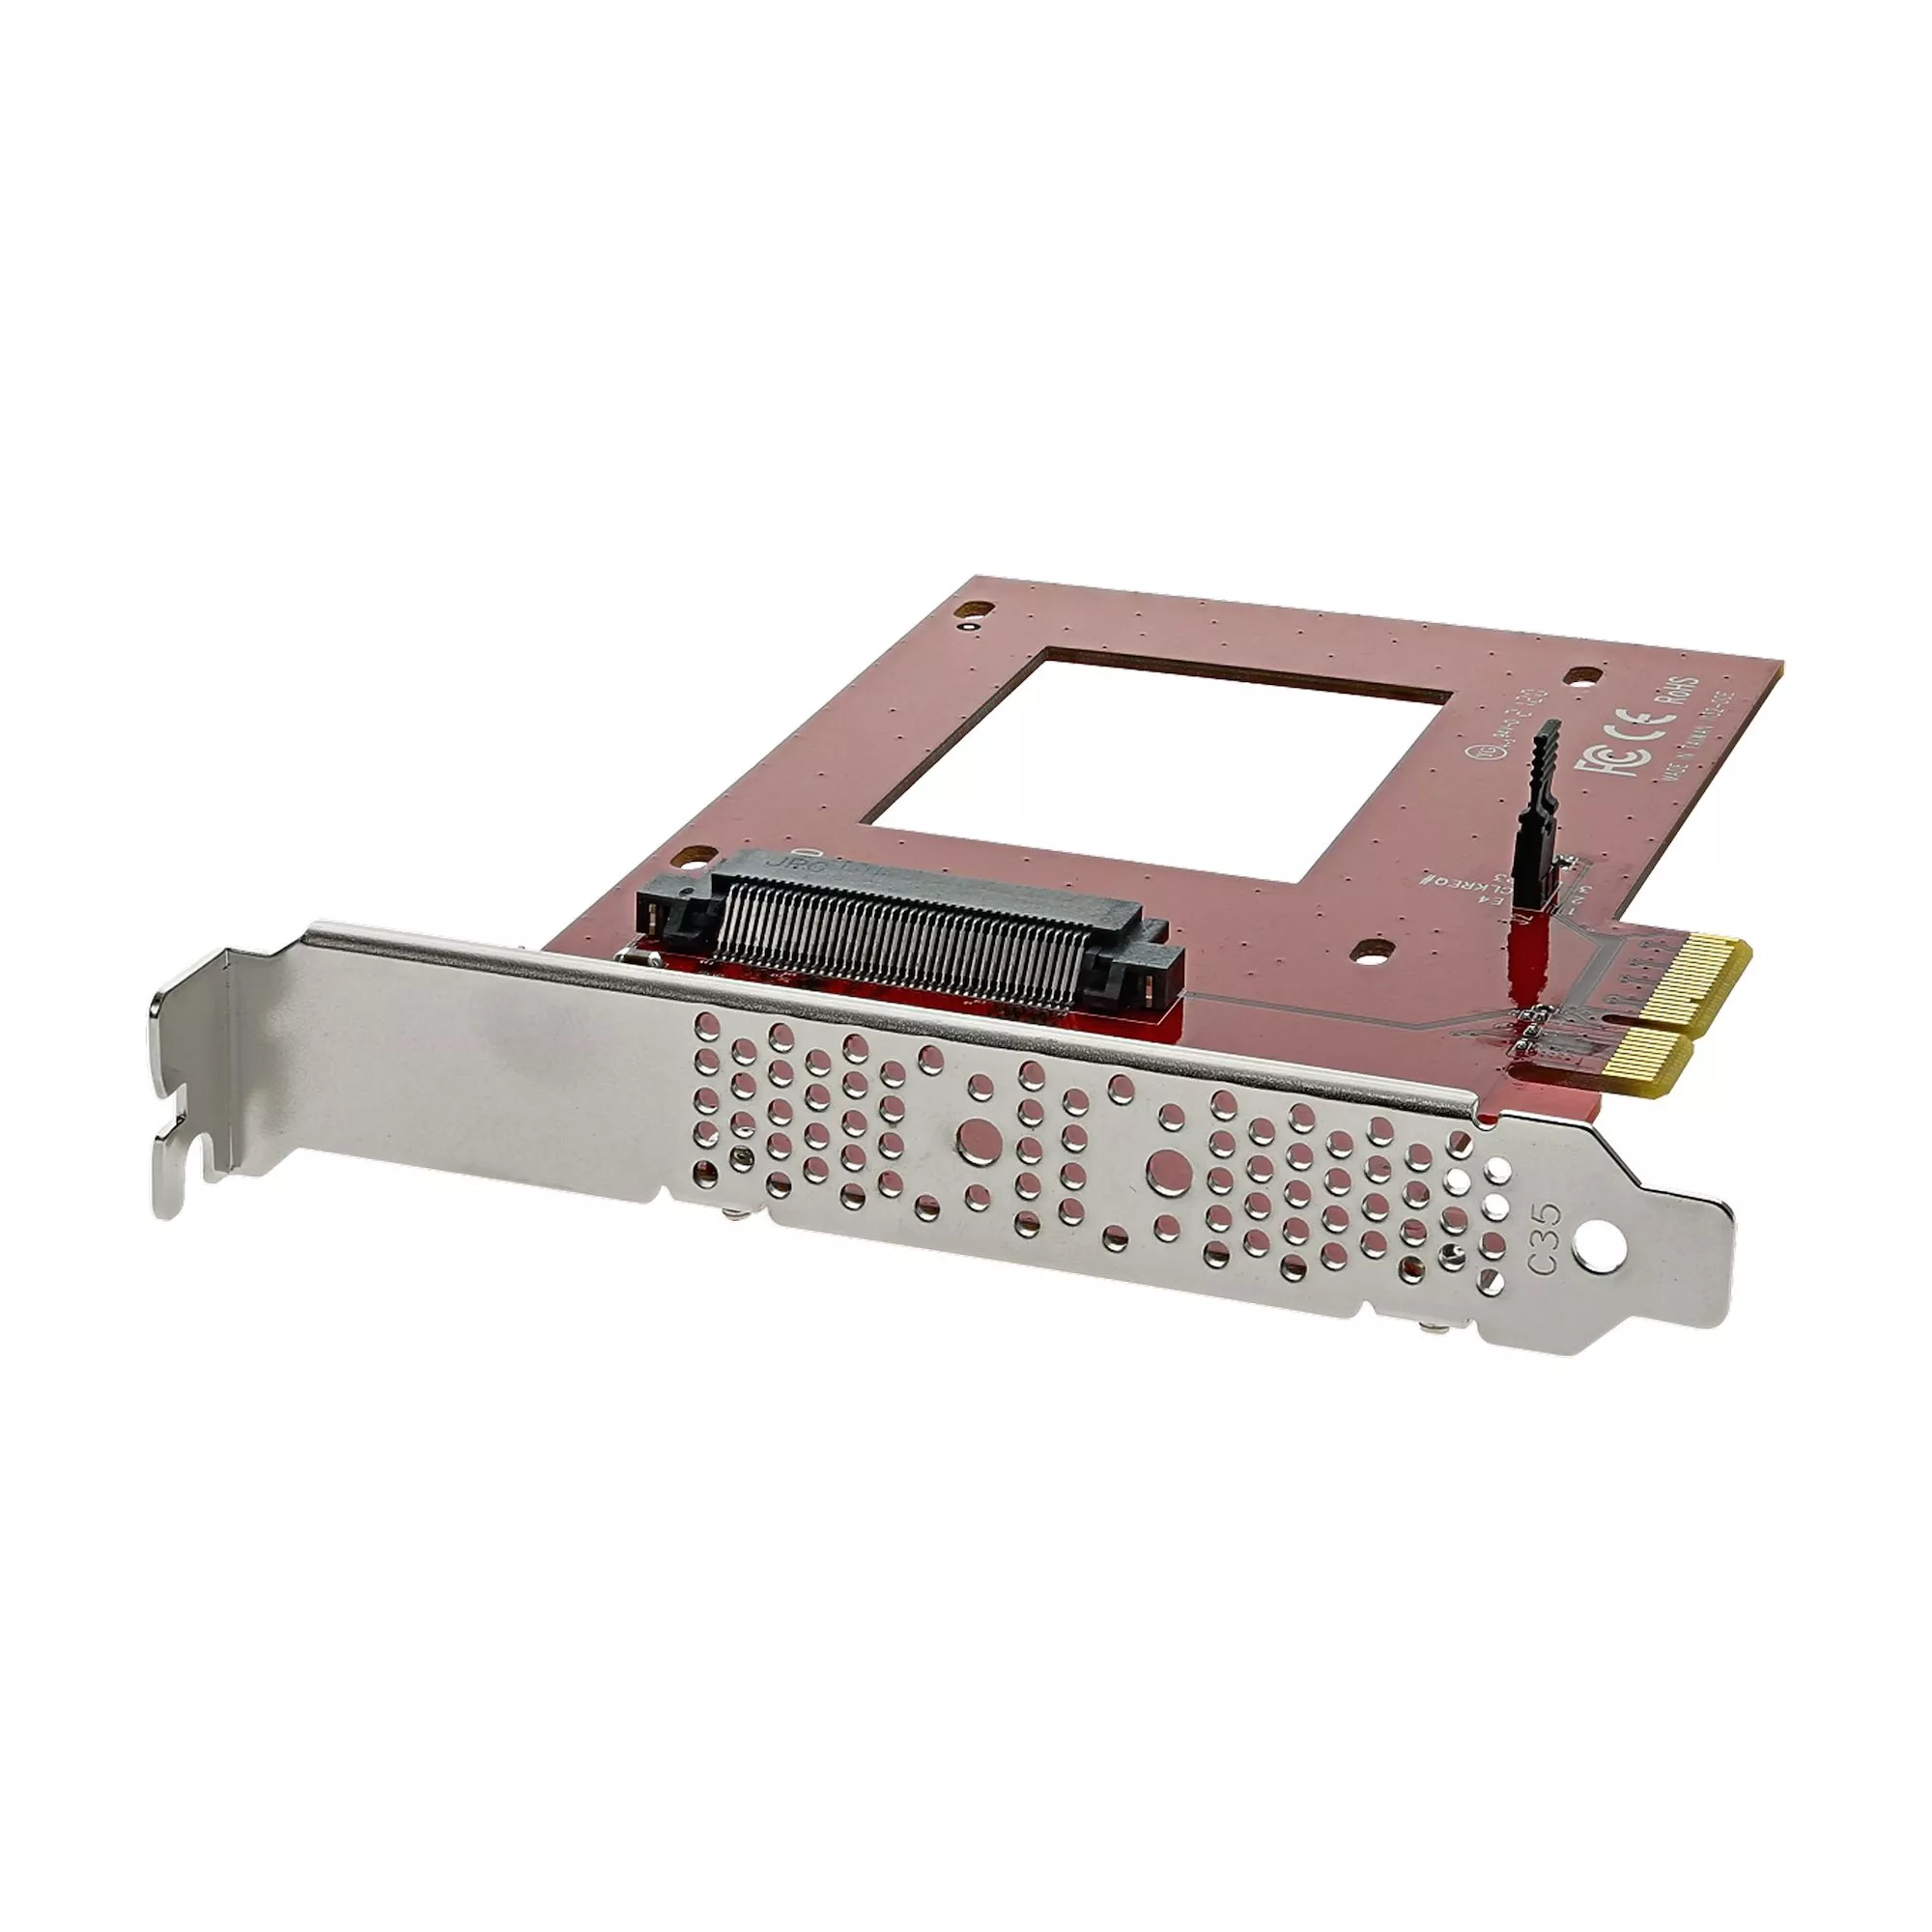 Achat StarTech.com Adaptateur U.2 vers PCIe pour SSD U.2 NVMe au meilleur prix